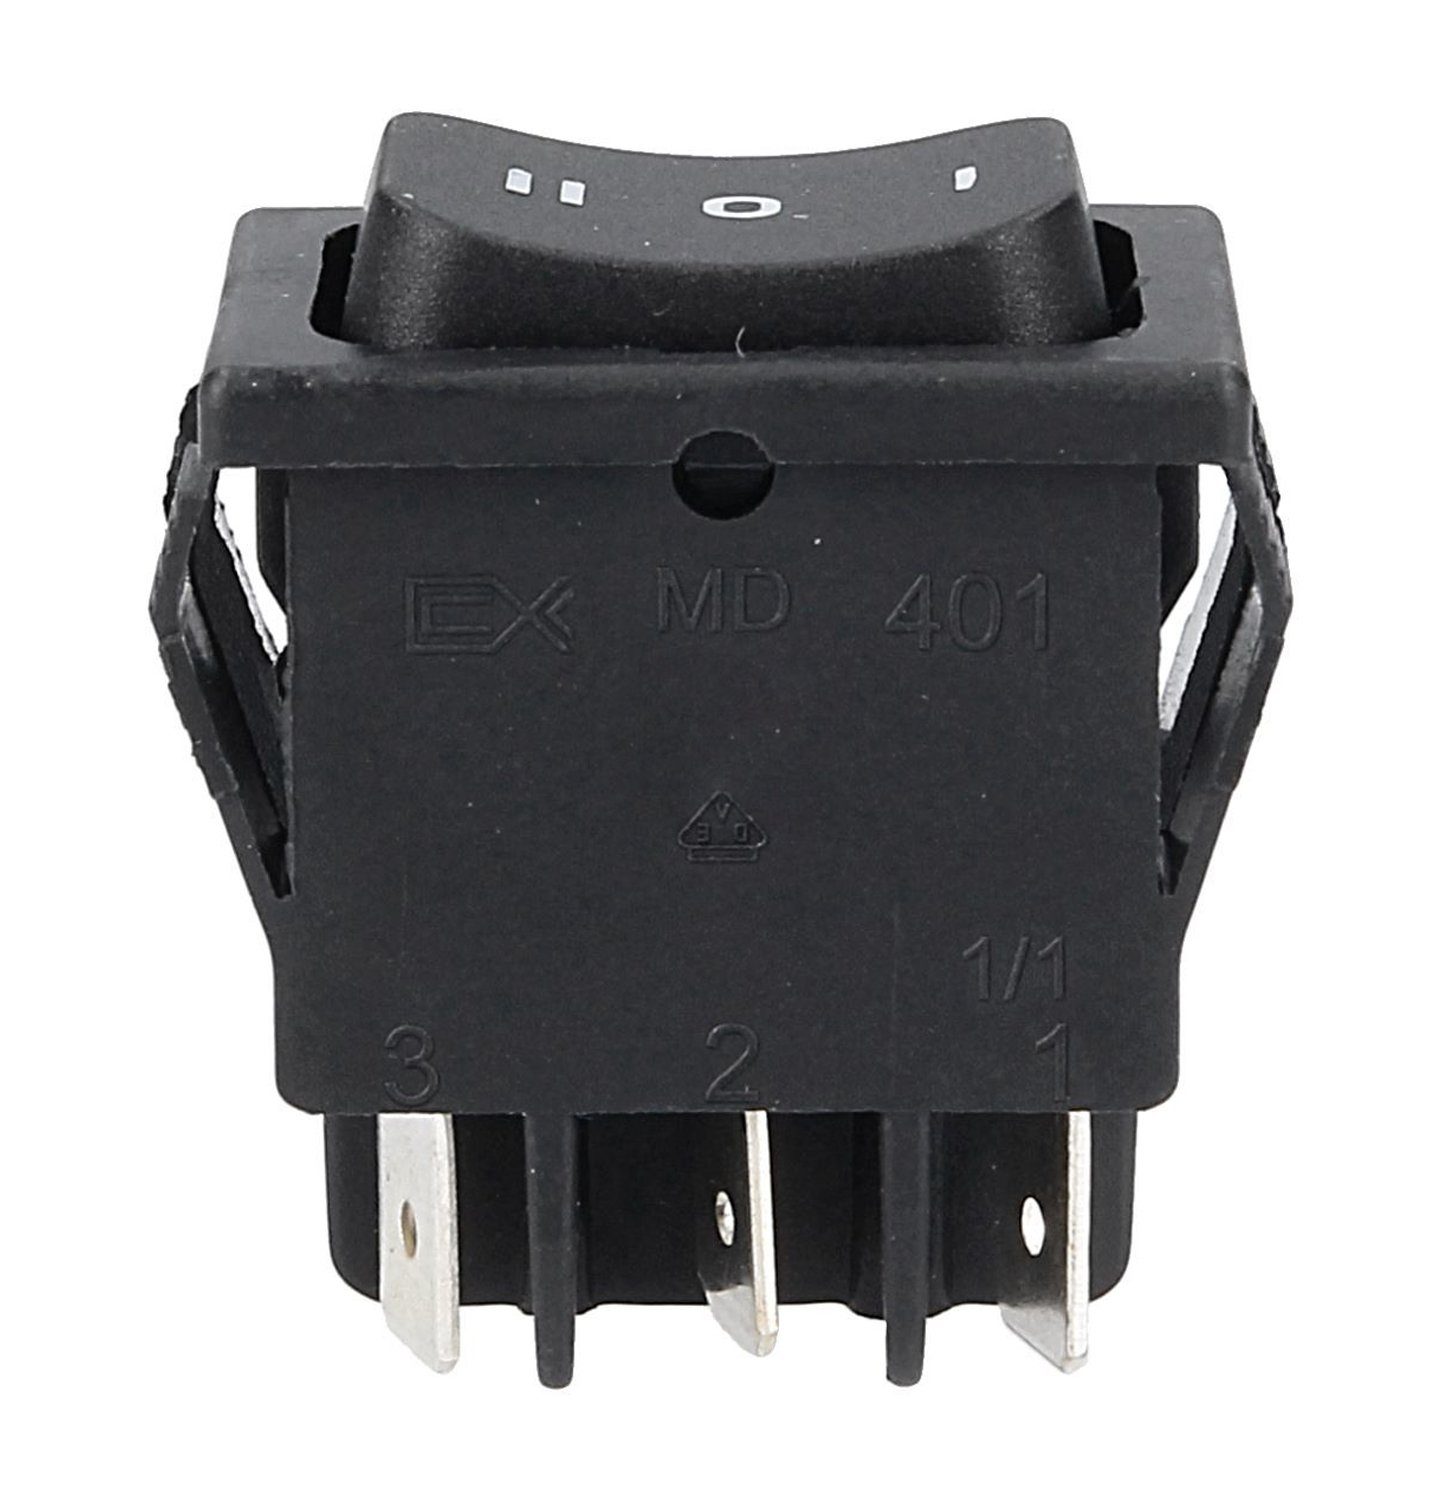 VIOKS schwarz - Wippschalter, Schalter Kleingeräte für Einbaumaß 32x22mm 2 0 - Schaltfolge 1